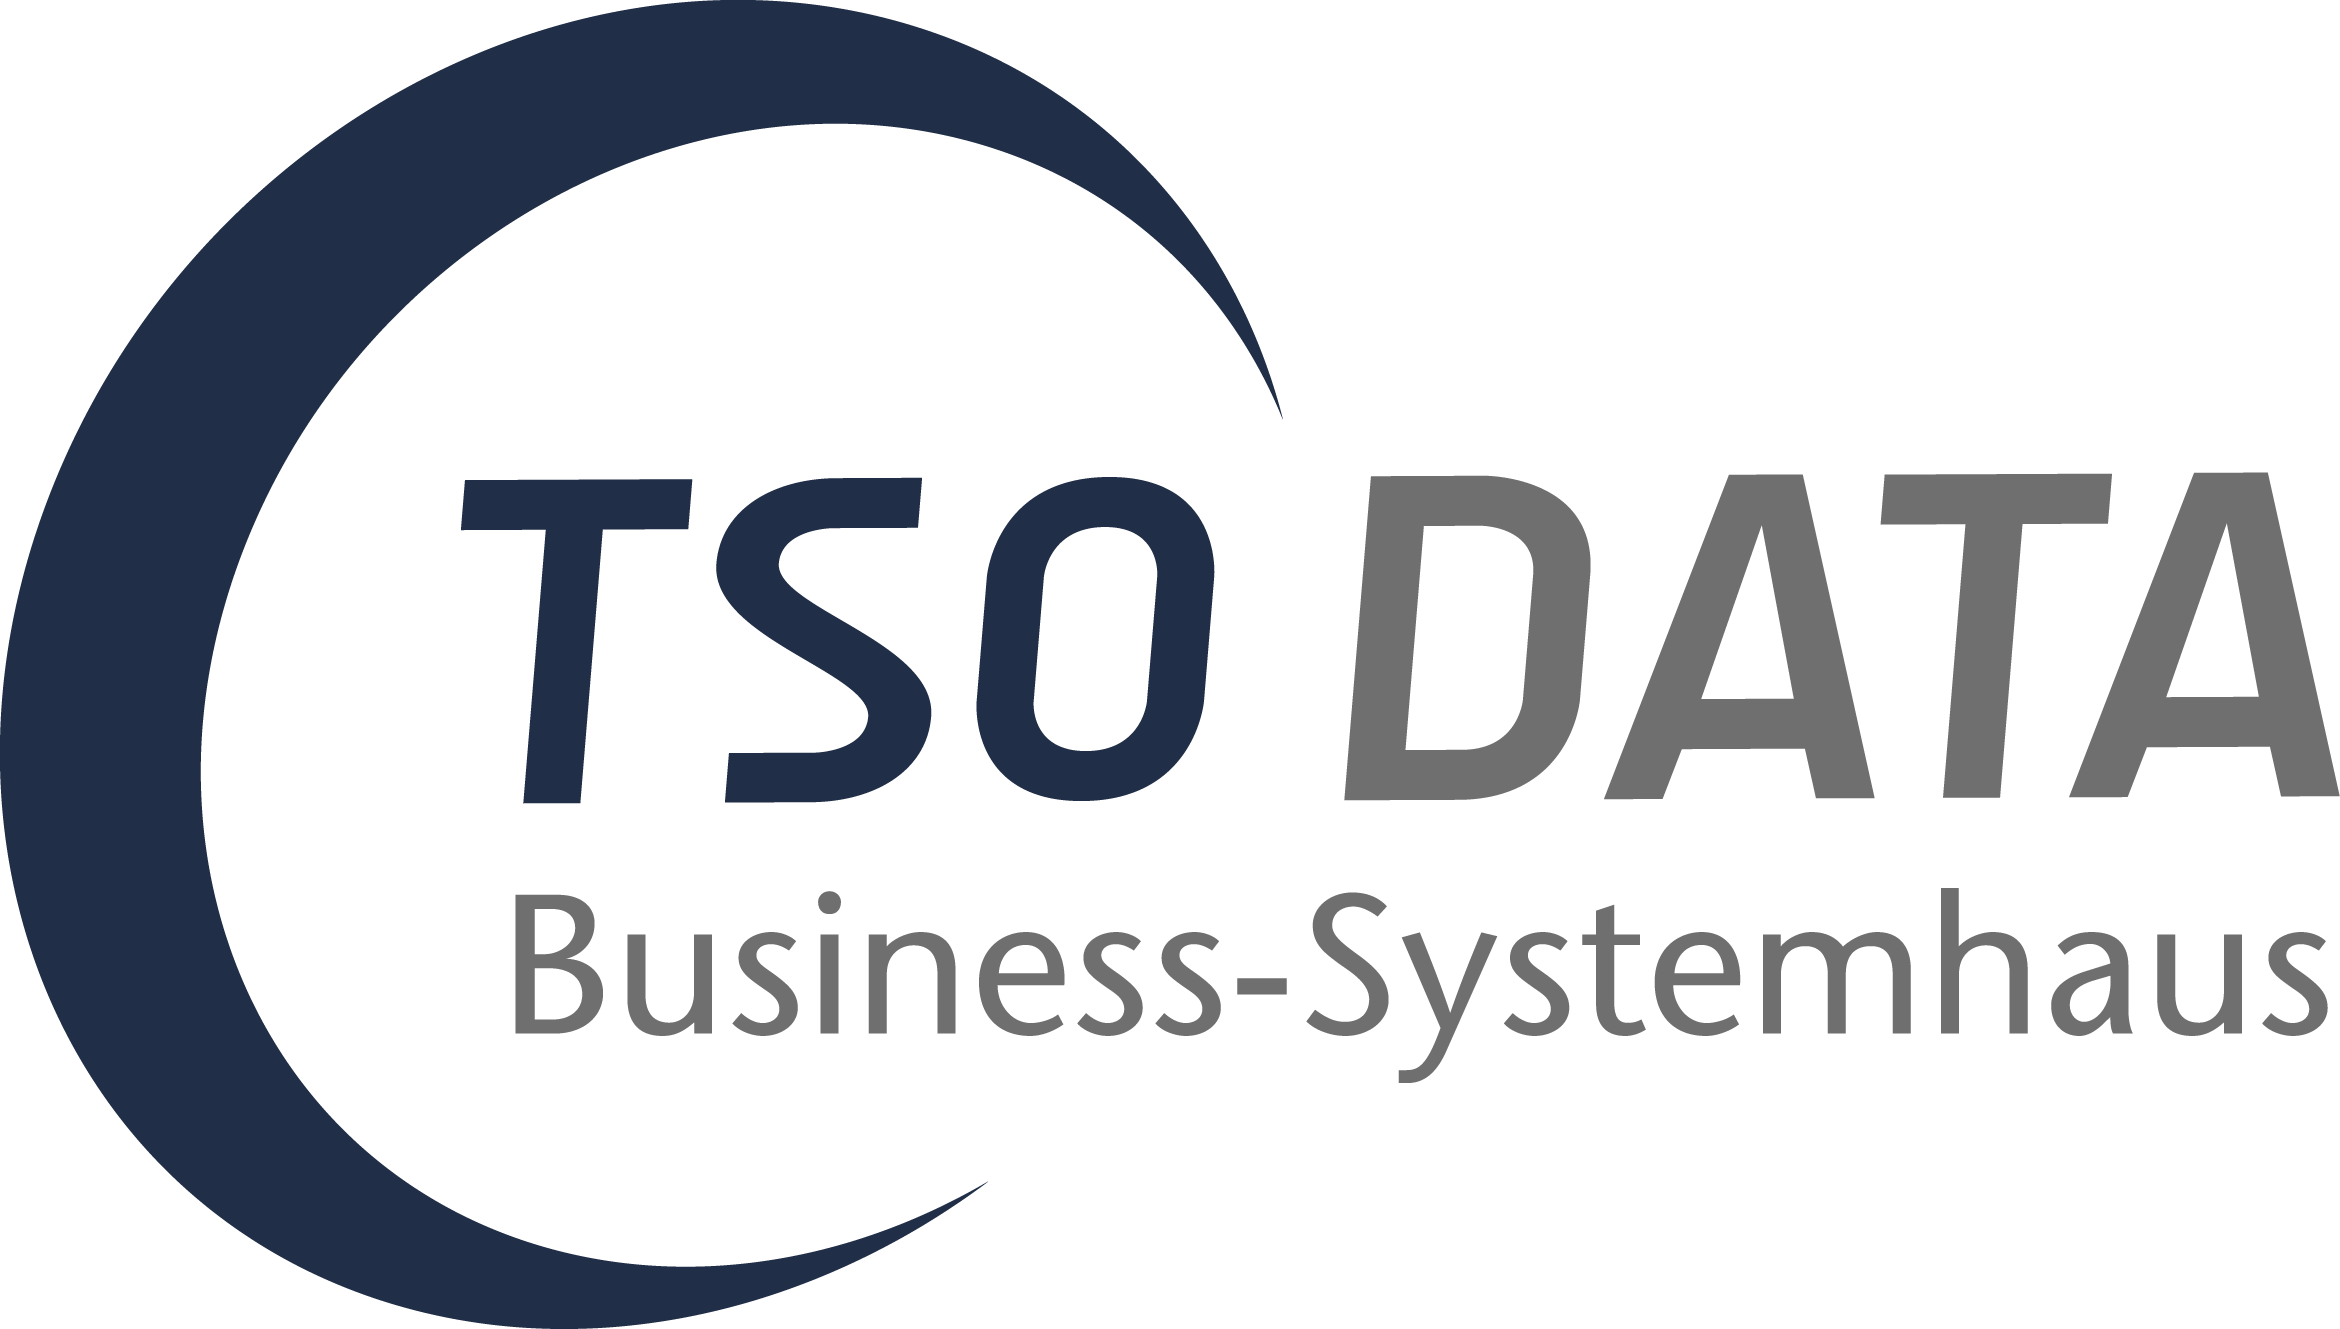 TSO-DATA GmbH